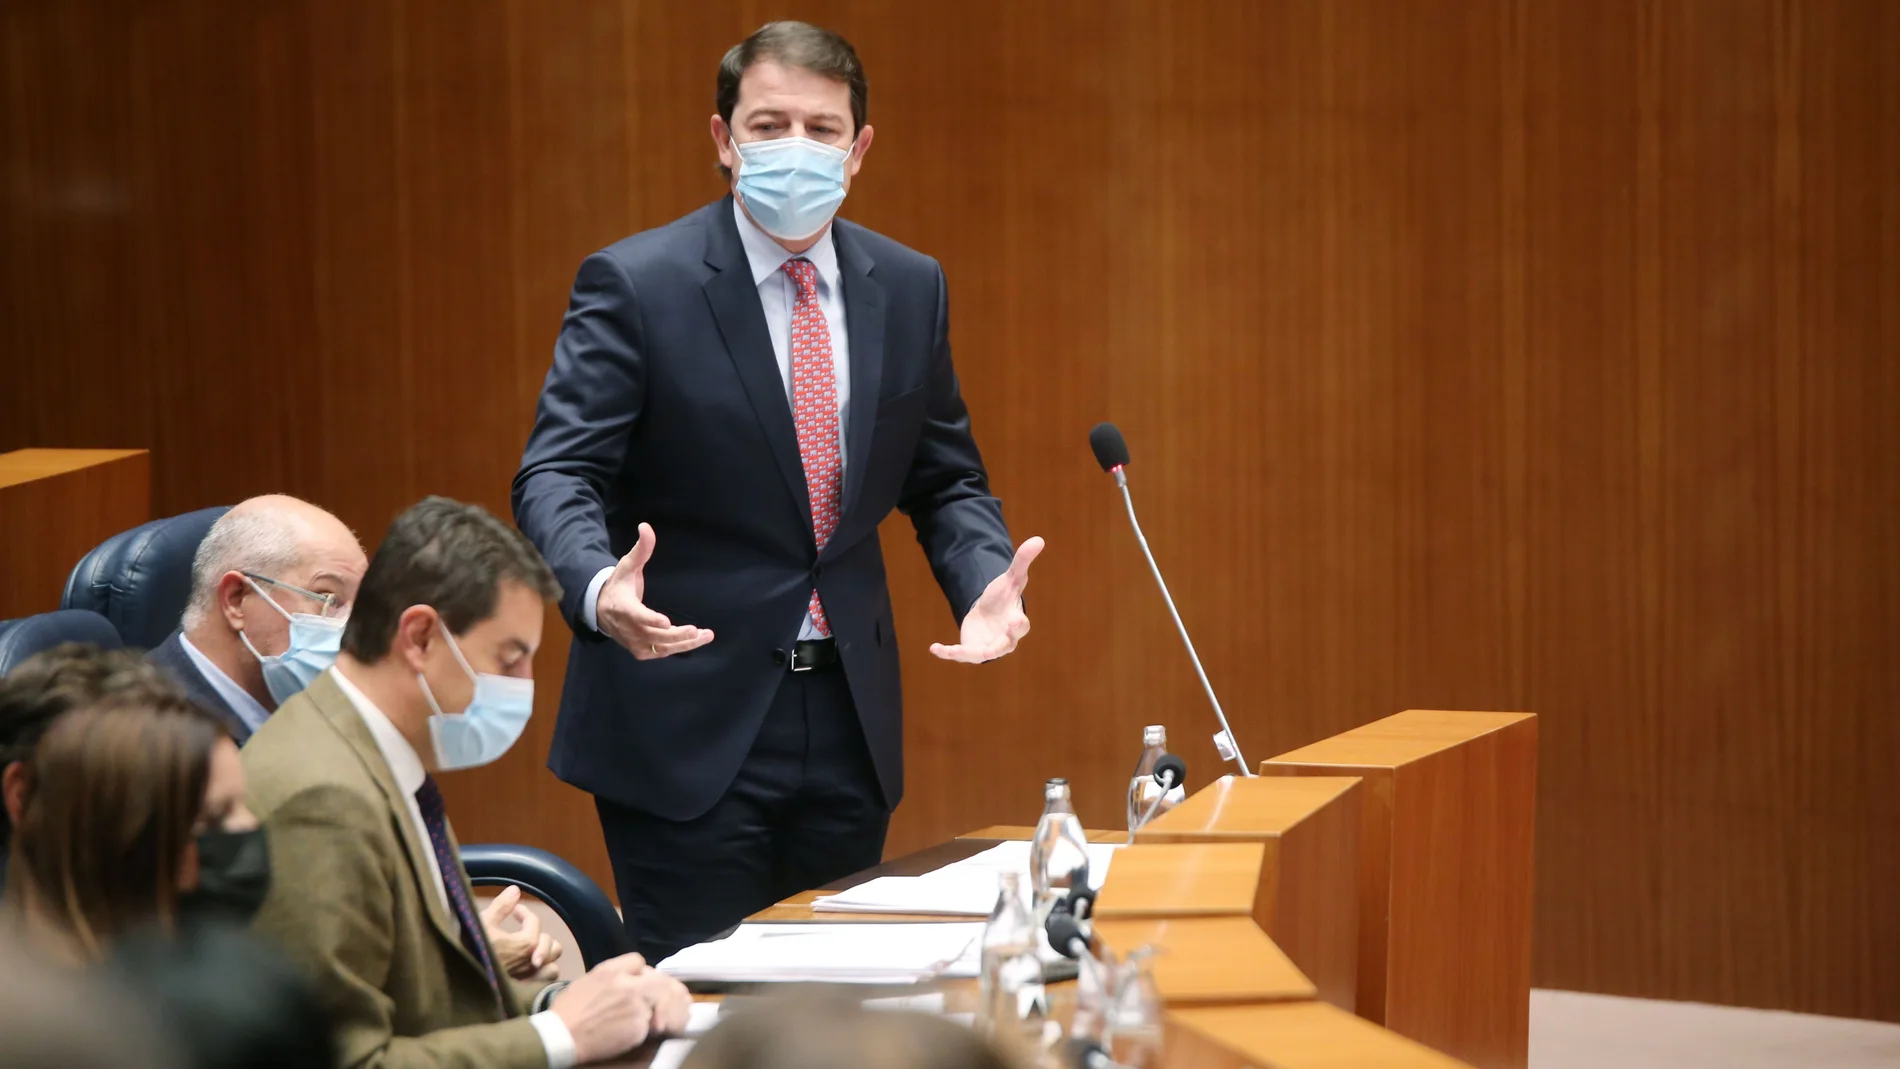 El presidente de ja Junta, Alfonso Fernández Mañueco, responde al socialista Luis Tudanca en el debate parlamentario